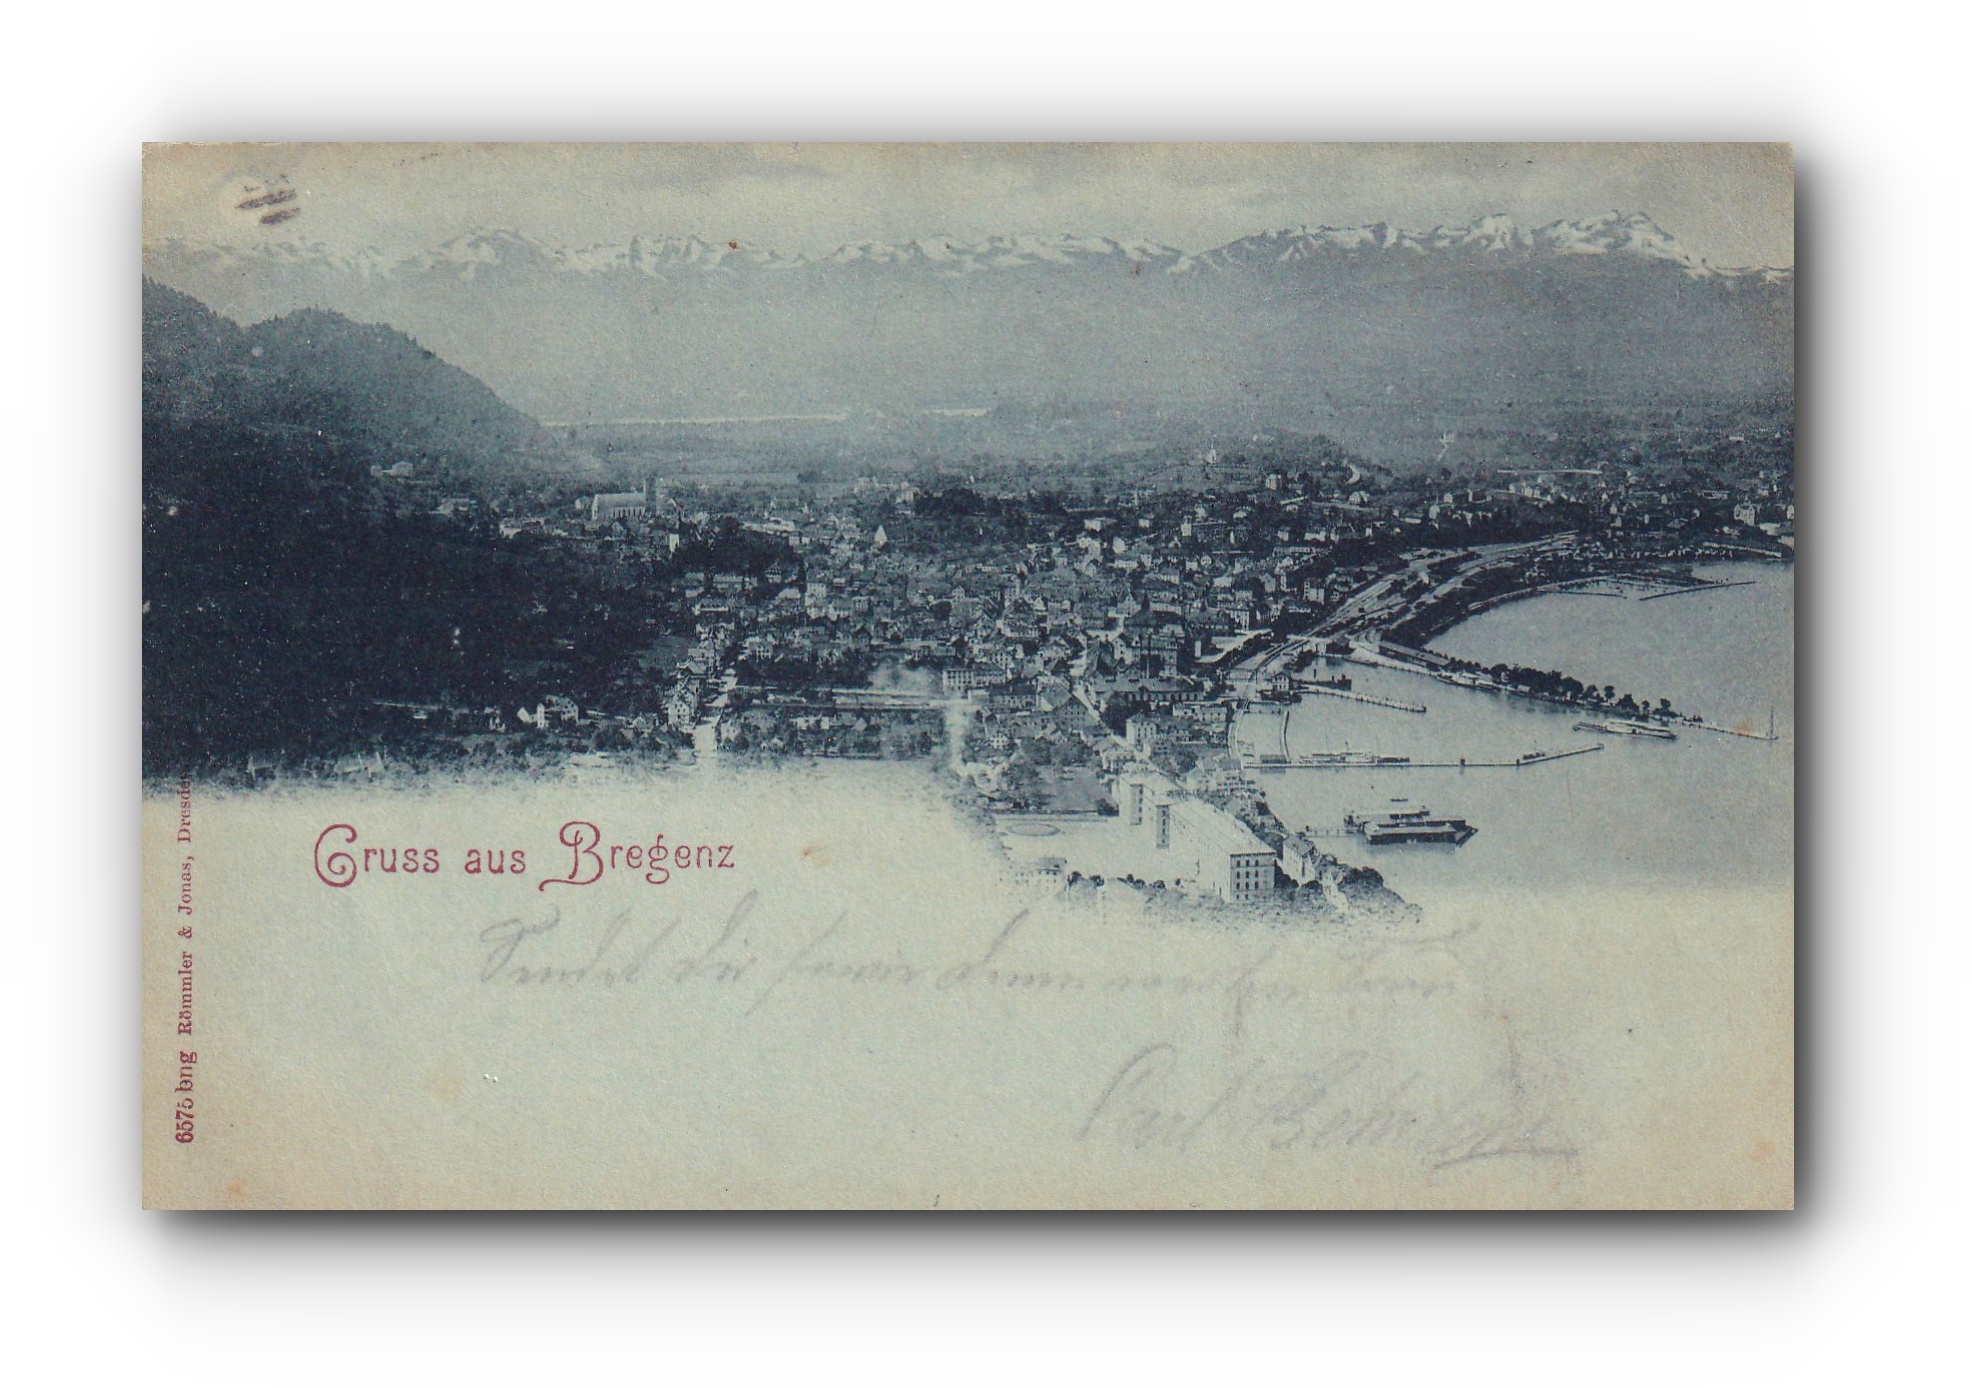 Gruss aus BREGENZ - 23.11.1897 - Salutations depuis Brégence - Greetings from Bregenz